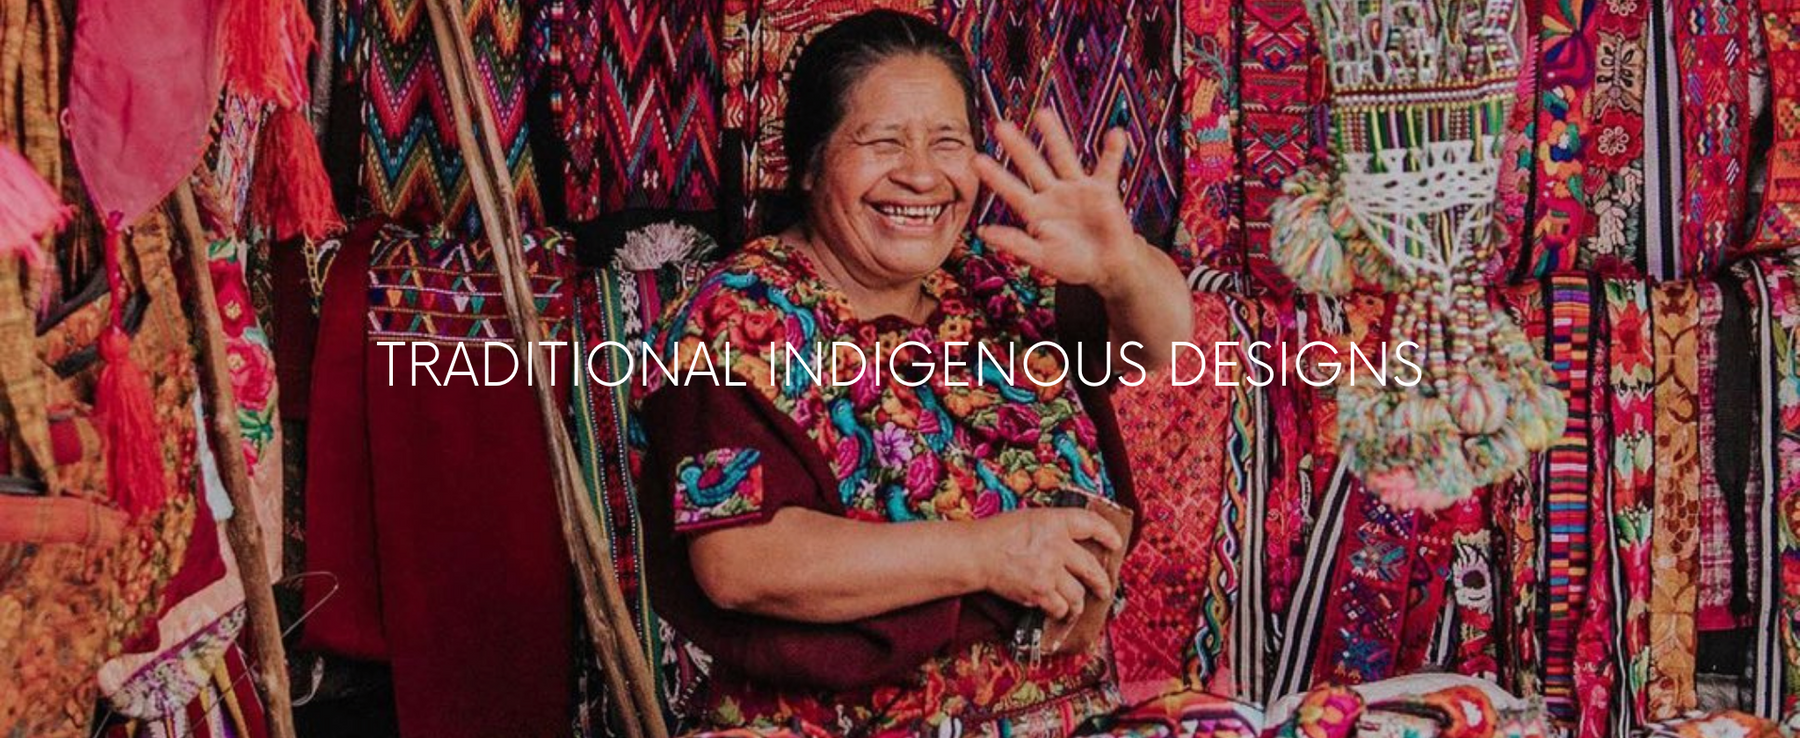 Guatemala Indigenous Designs shopping ethical Hiptipico